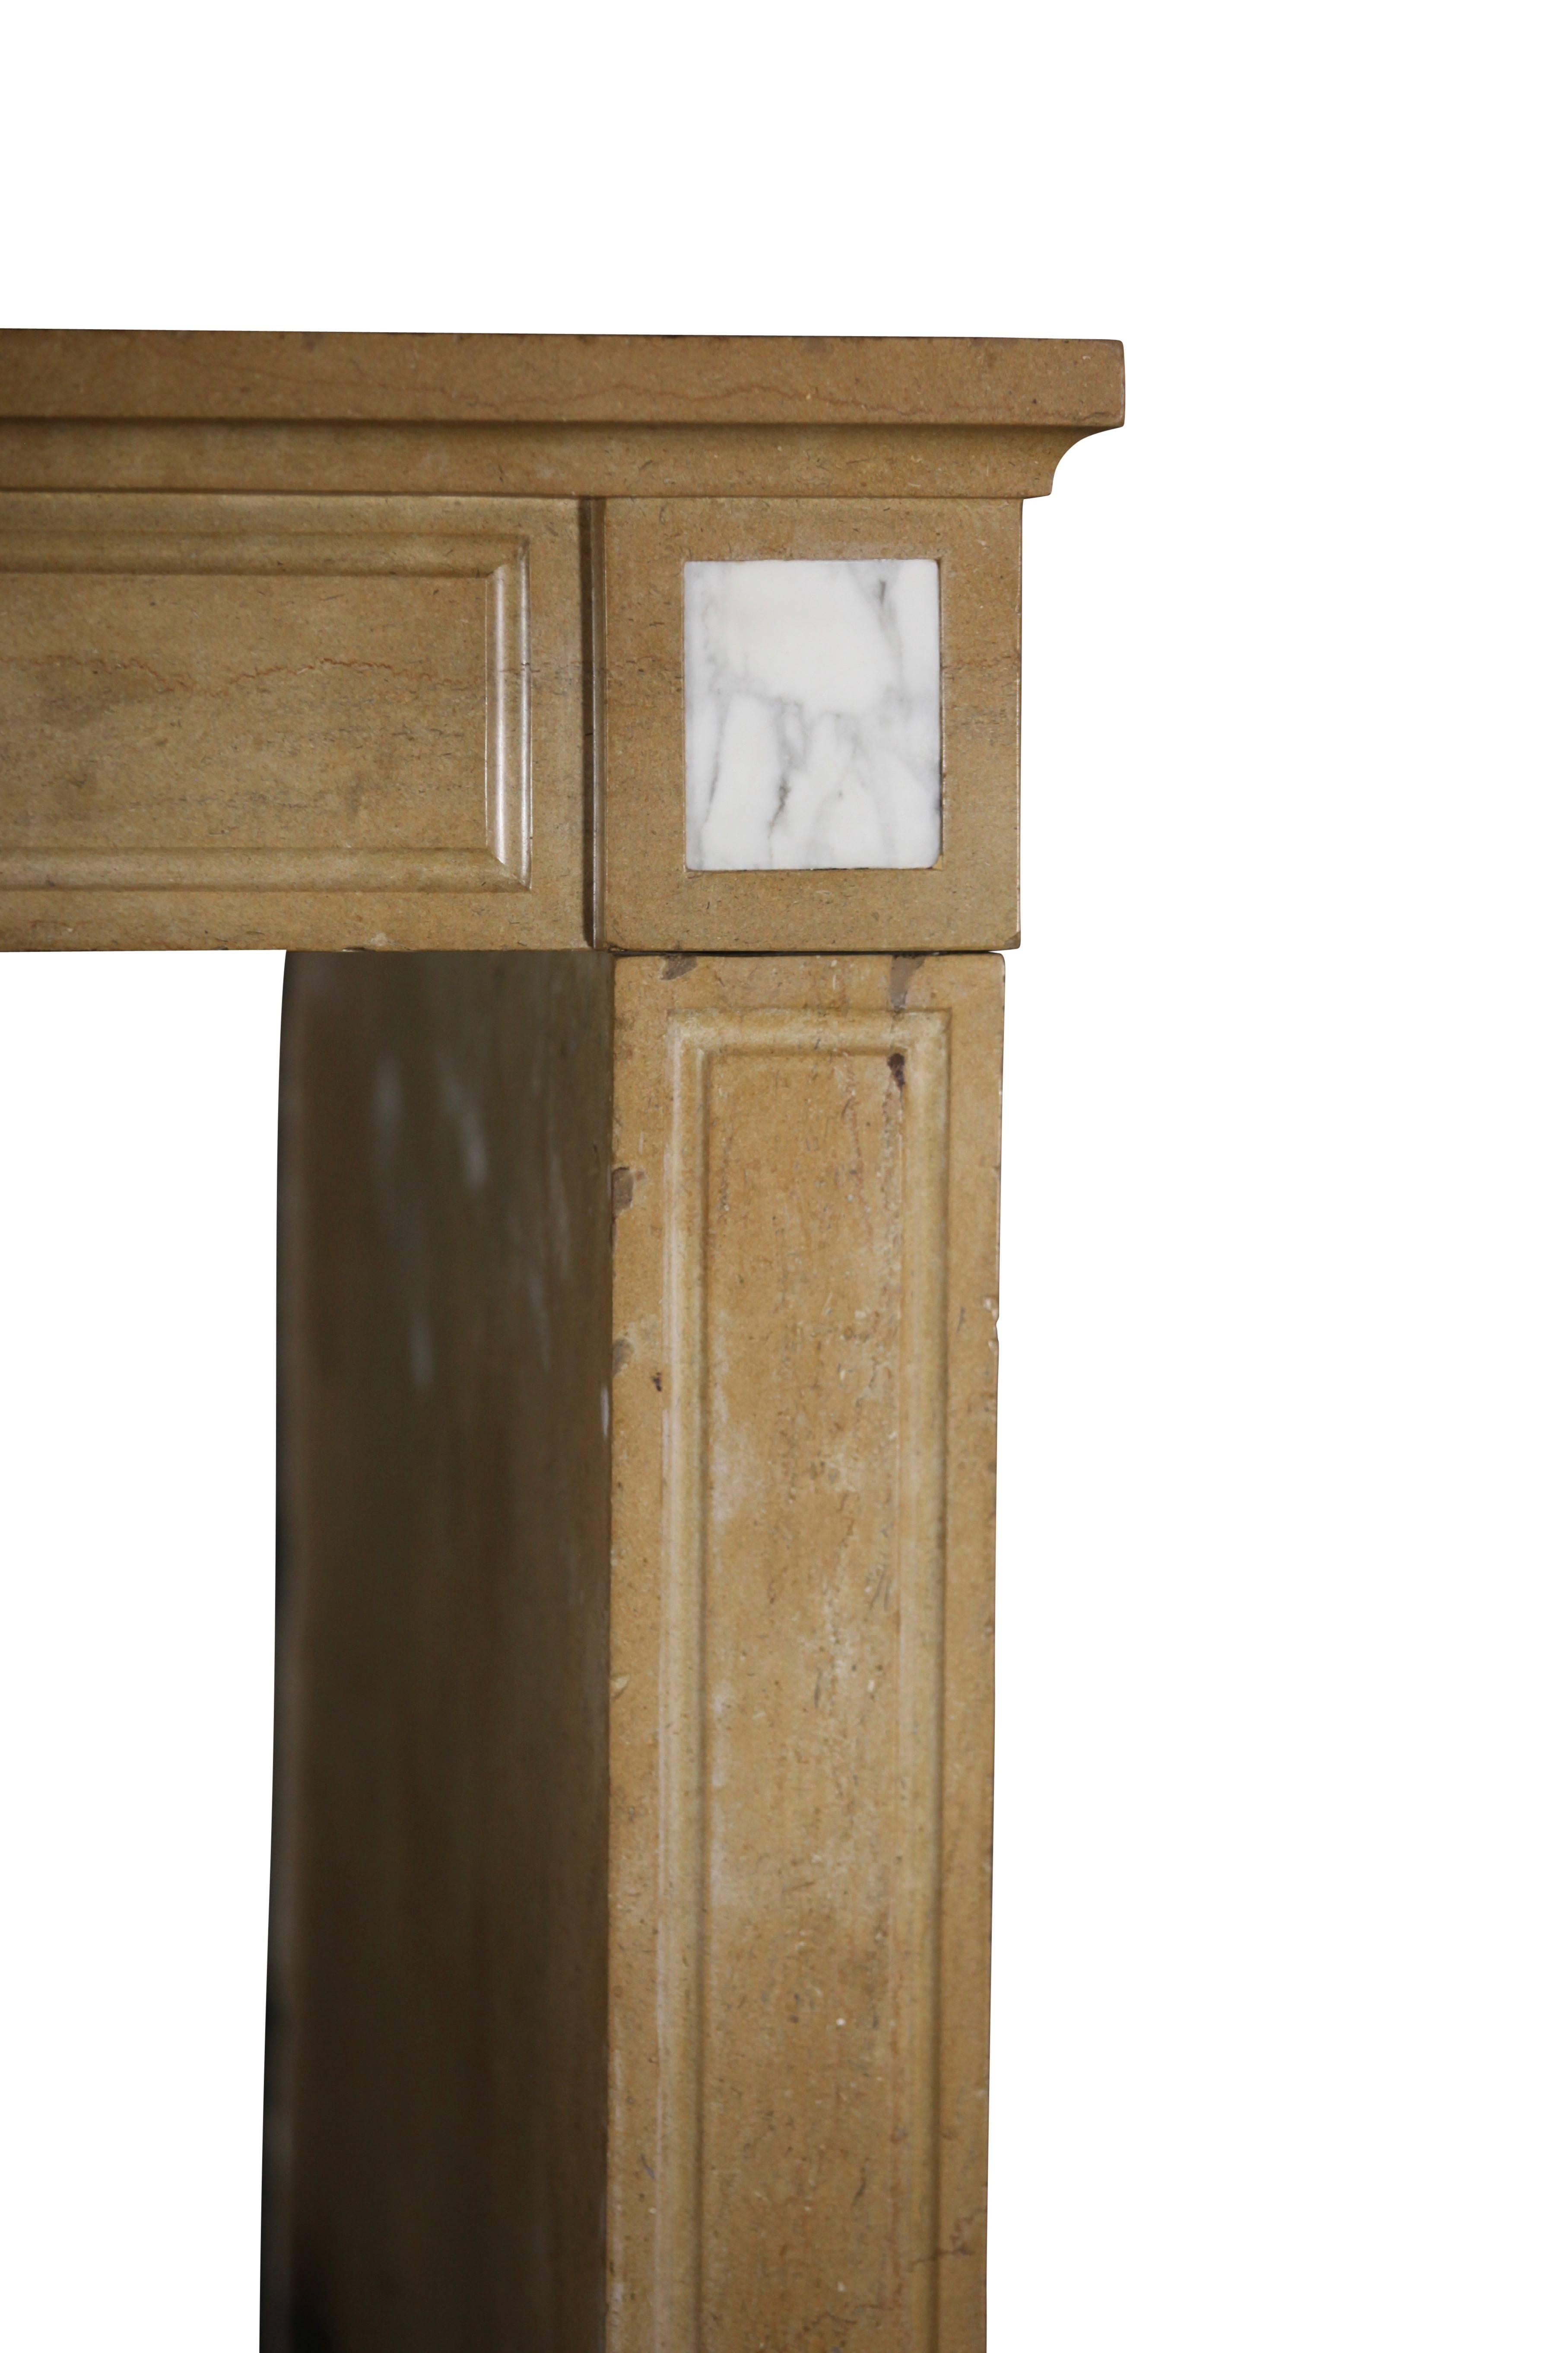 Cet encadrement de cheminée original en pierre dure avec incrustation en marbre de Carrare date du début du 19e siècle. Il a été installé dans la région de Bourgogne en France. Les pieds extra profonds avec pièce latérale conviennent pour une